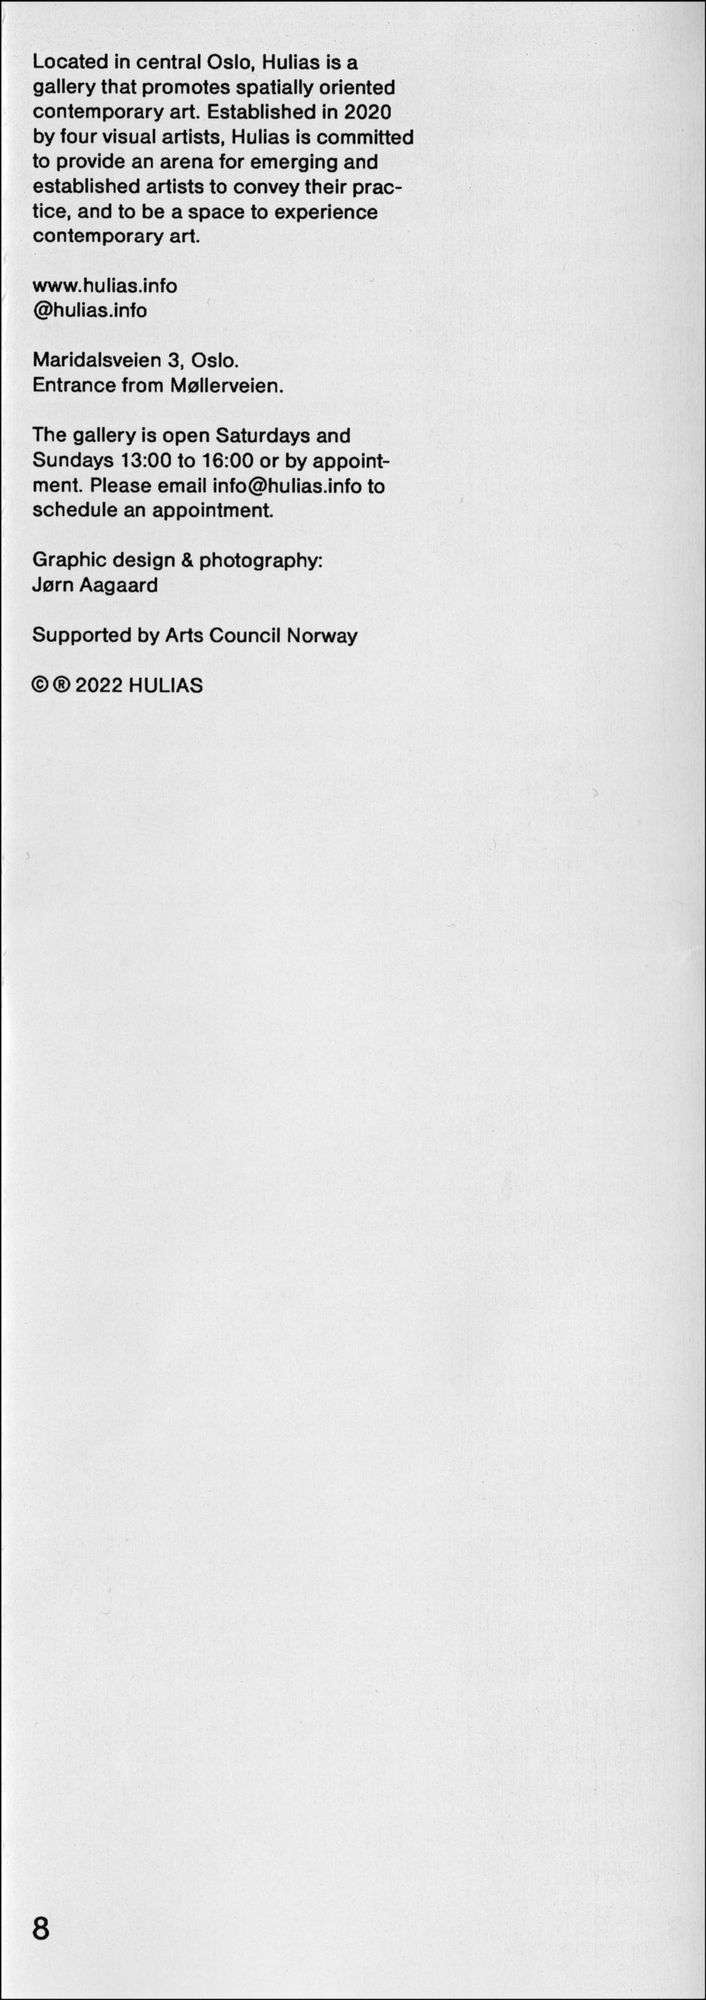 Catalog scan for Lediggang & Tullprat